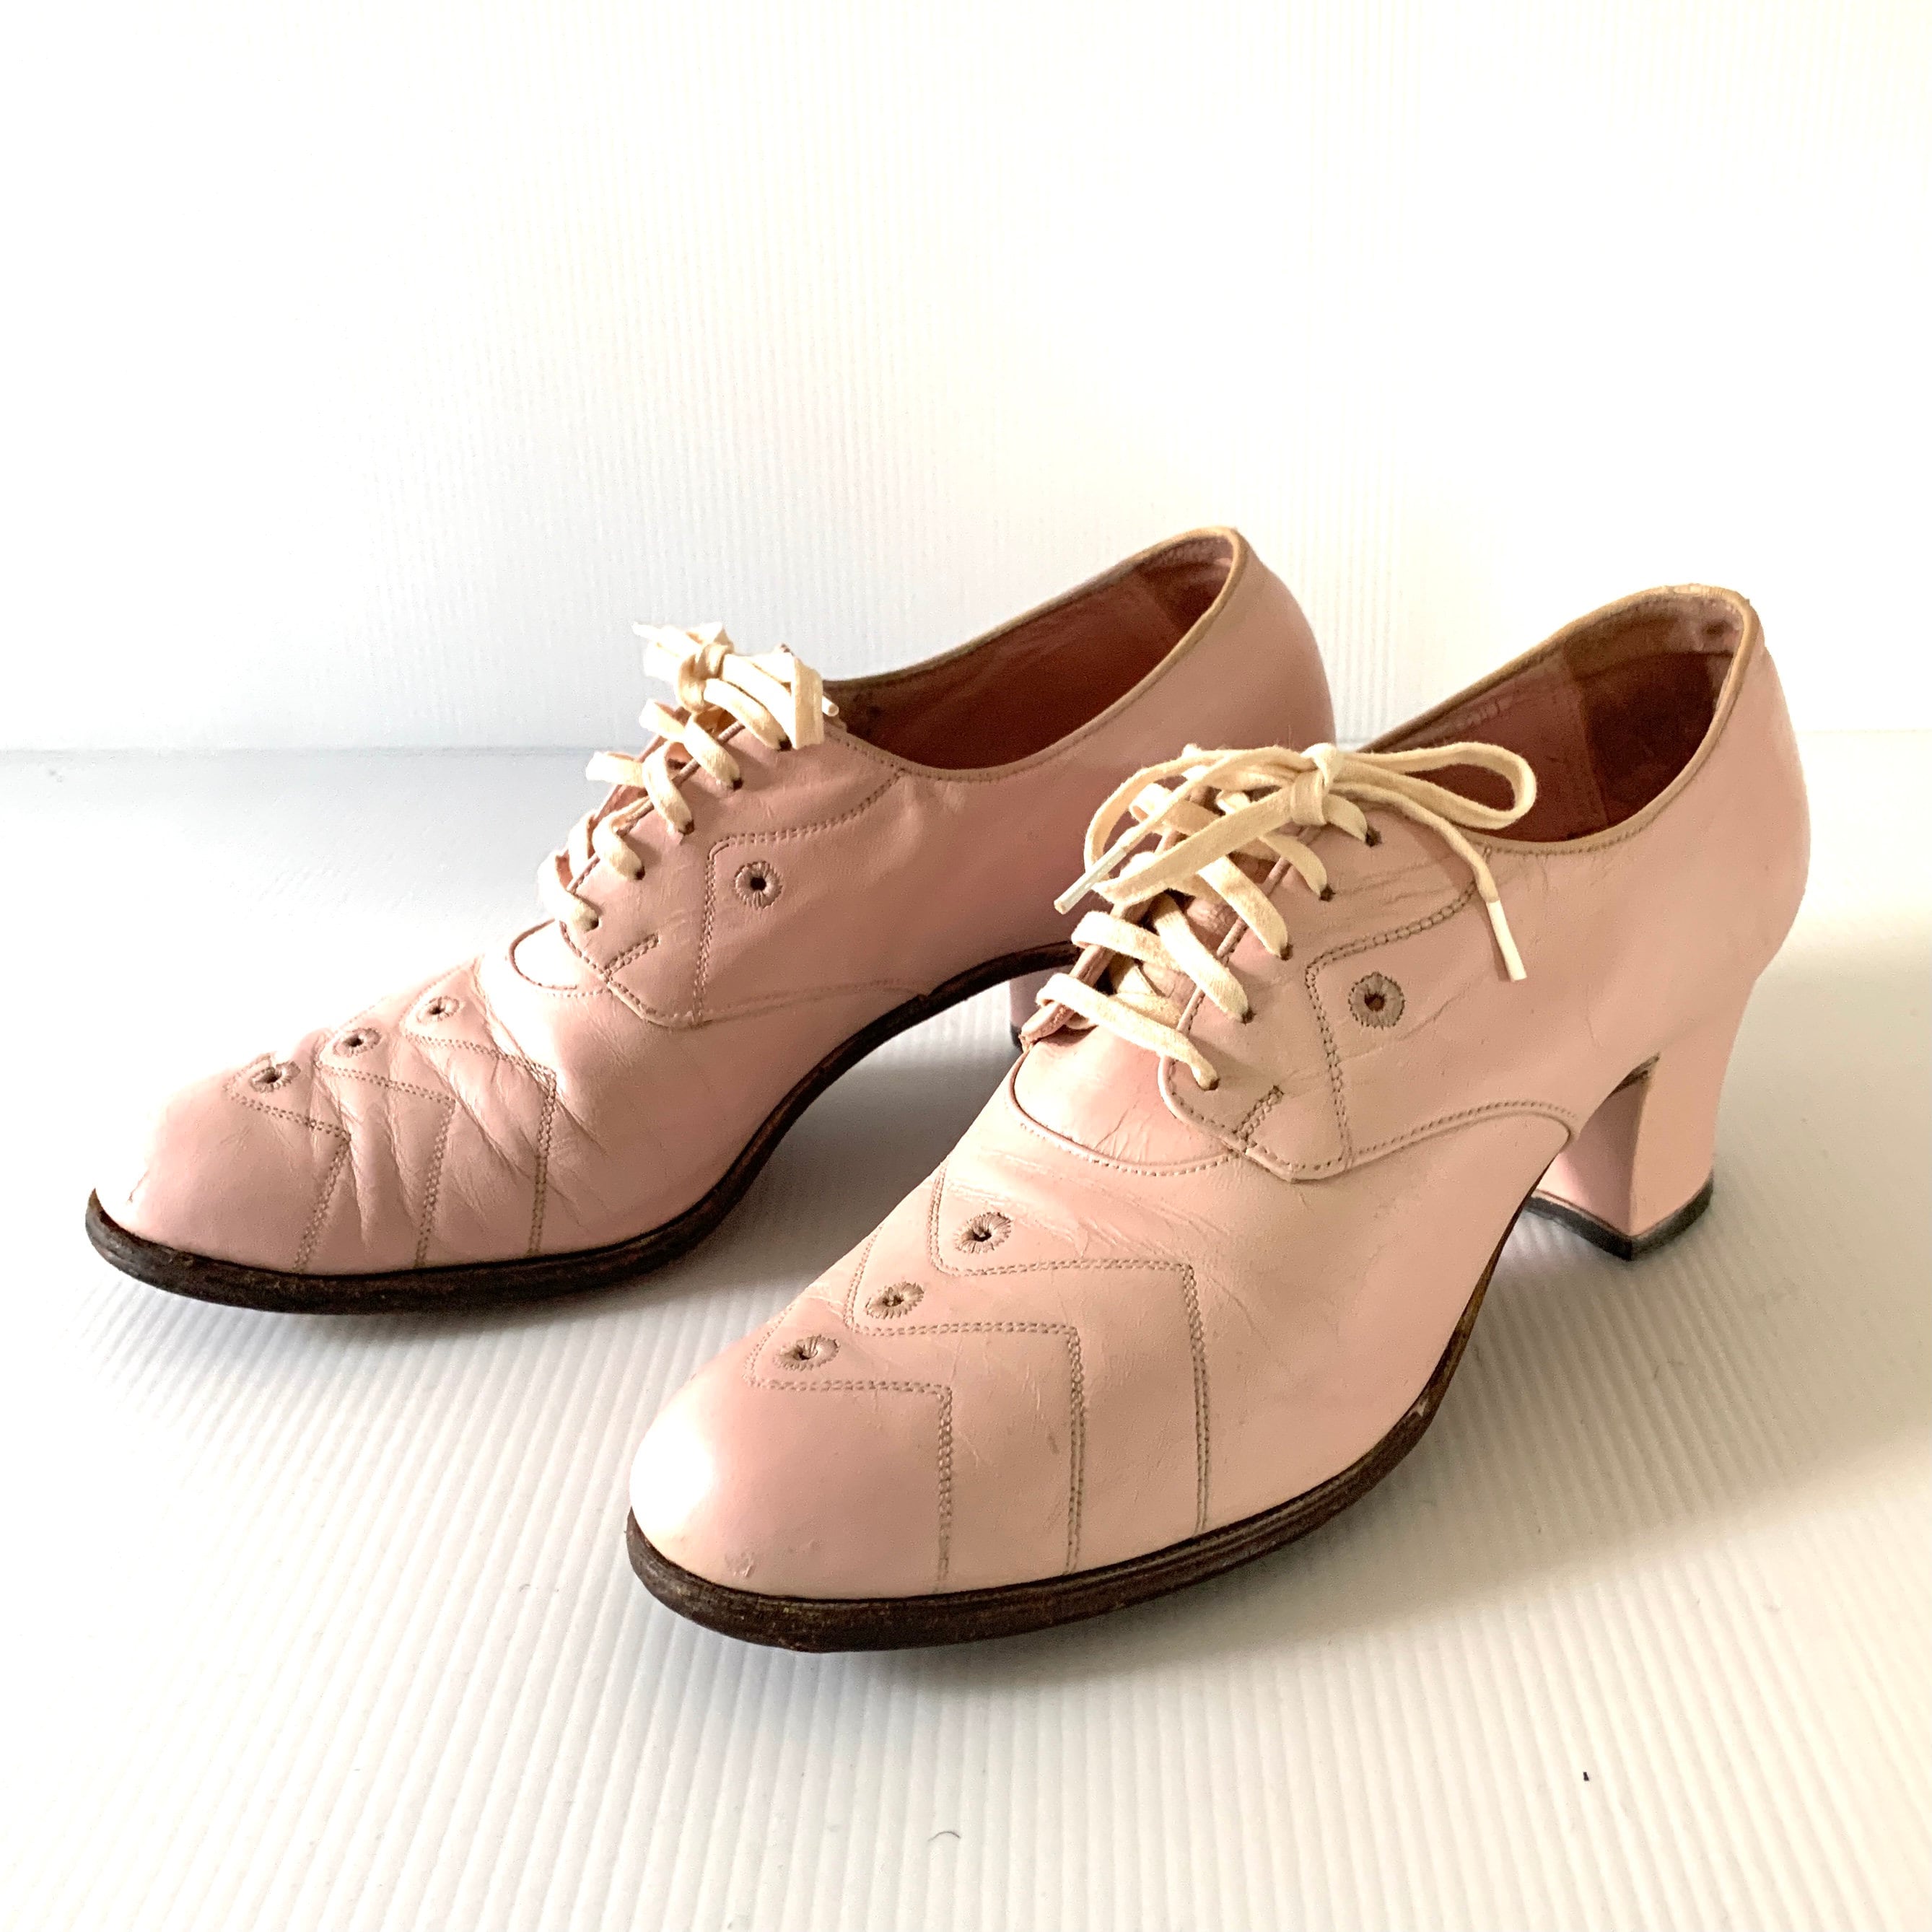 Zapatos de salón Slingback Complements Elegance rosa lápiz labial metálico cuero vintage 41 